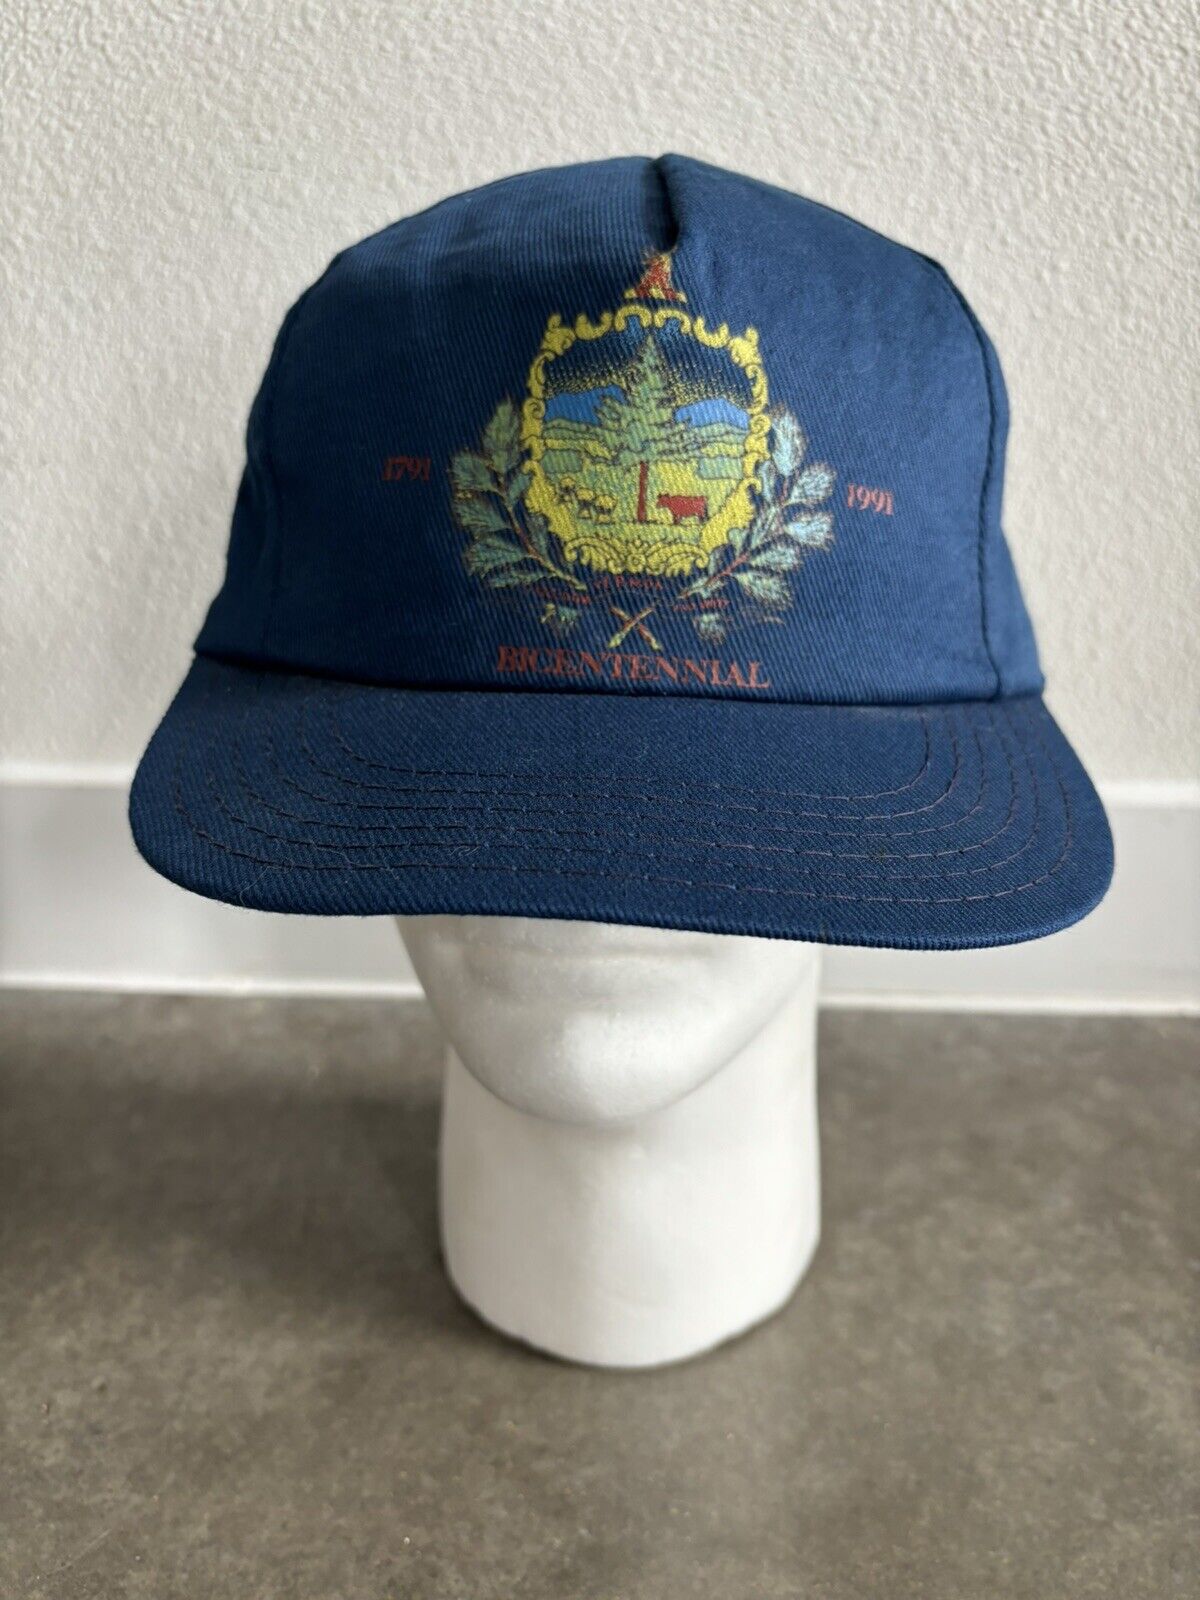 Vintage 1991 Vermont BICENTENNIAL Strapback Hat Blue 14th State 1791 - 1991